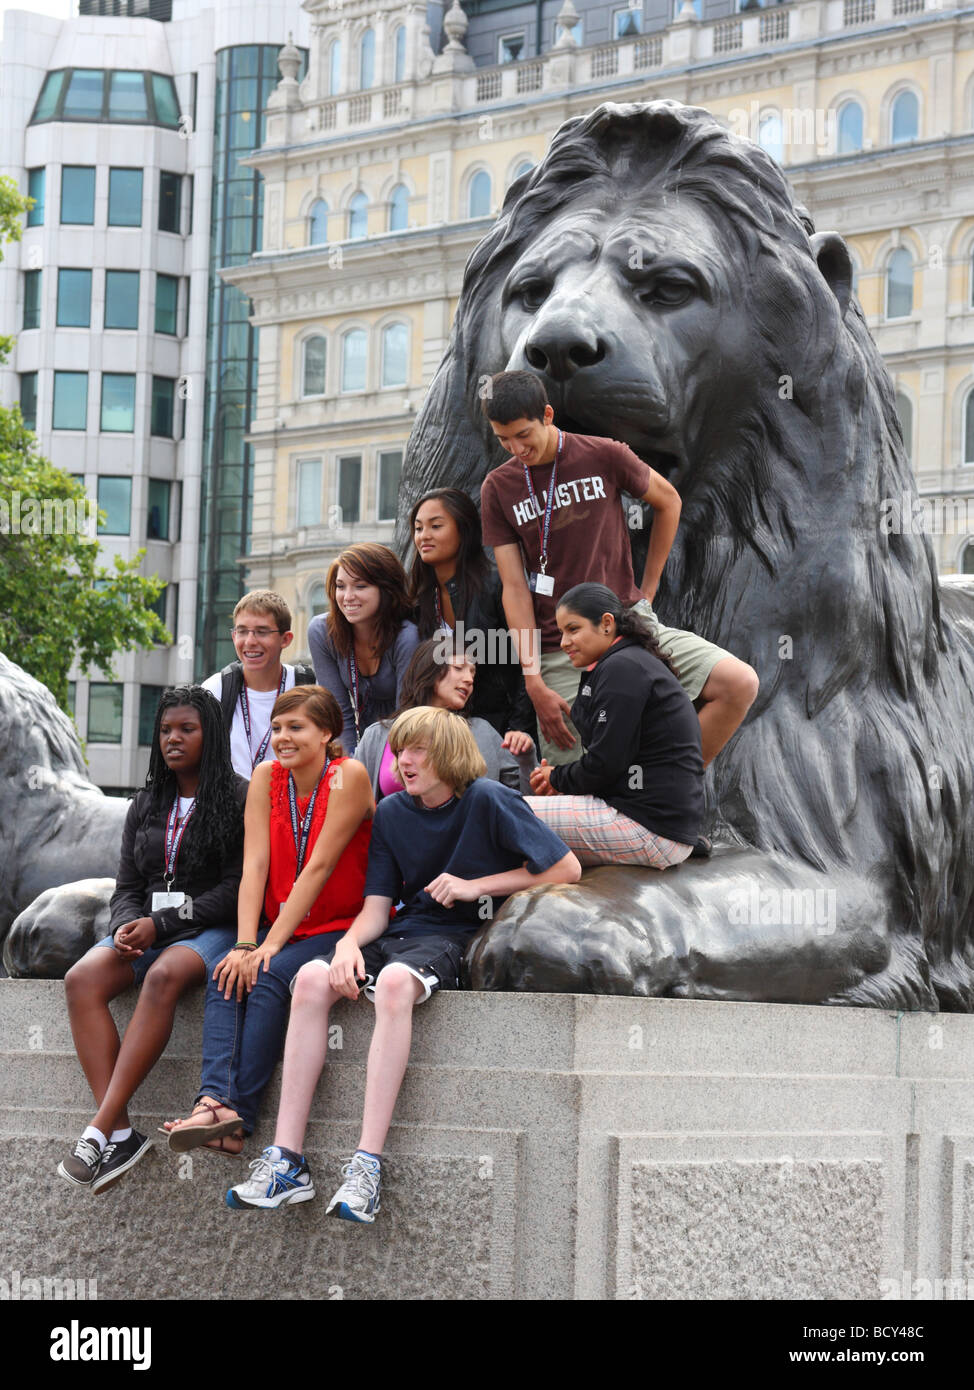 Étudiants étrangers à Trafalgar Square, Londres, Angleterre, Royaume-Uni Banque D'Images